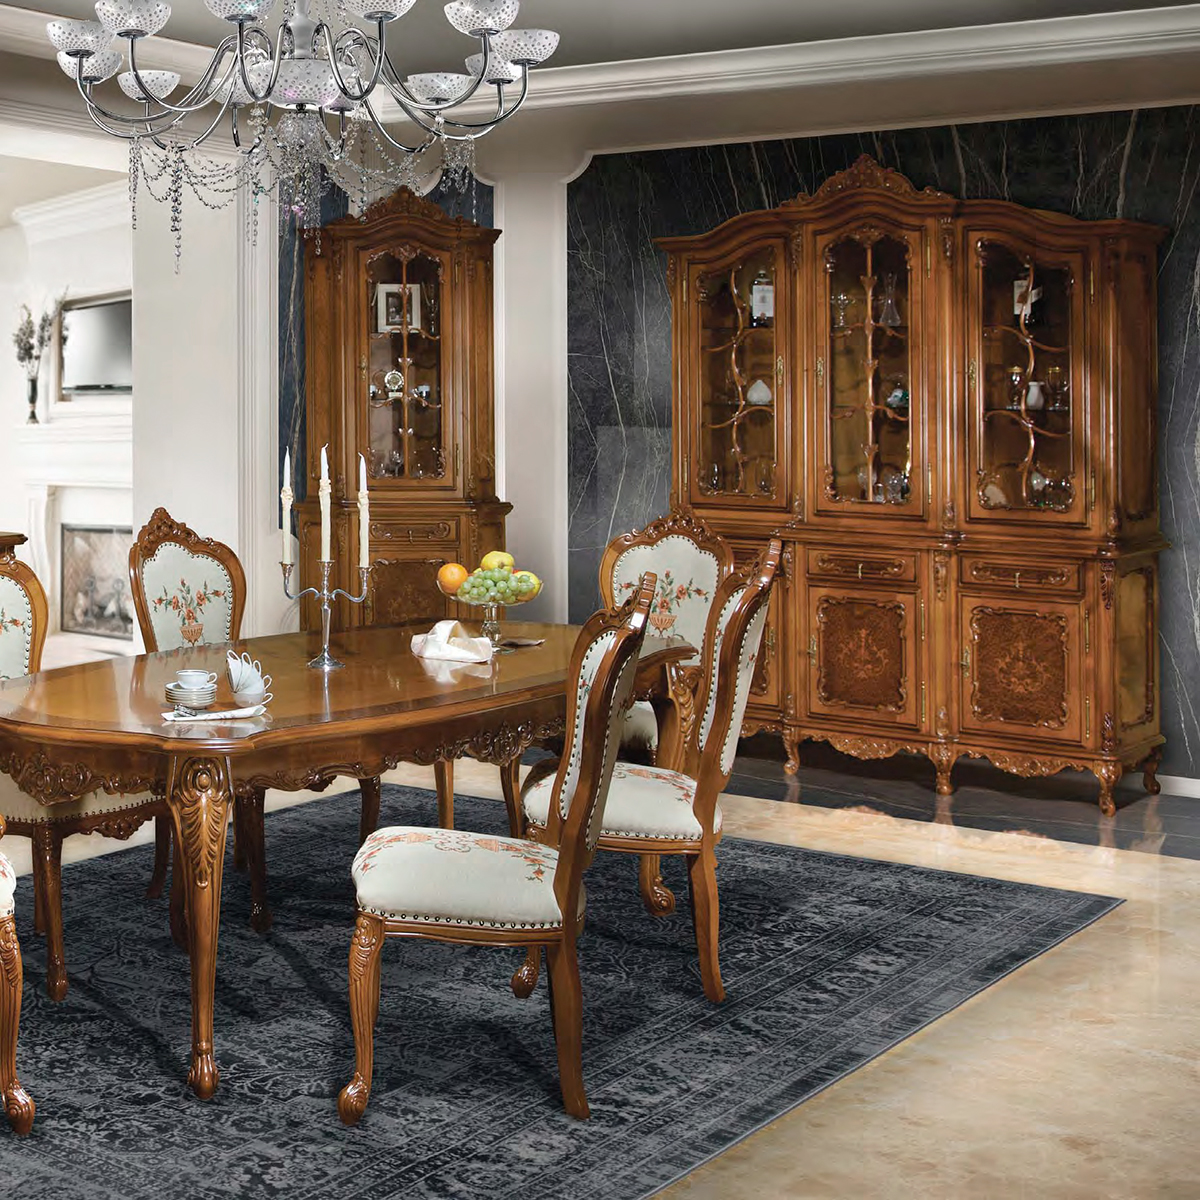 Румынская гостиная мебель клеопатра